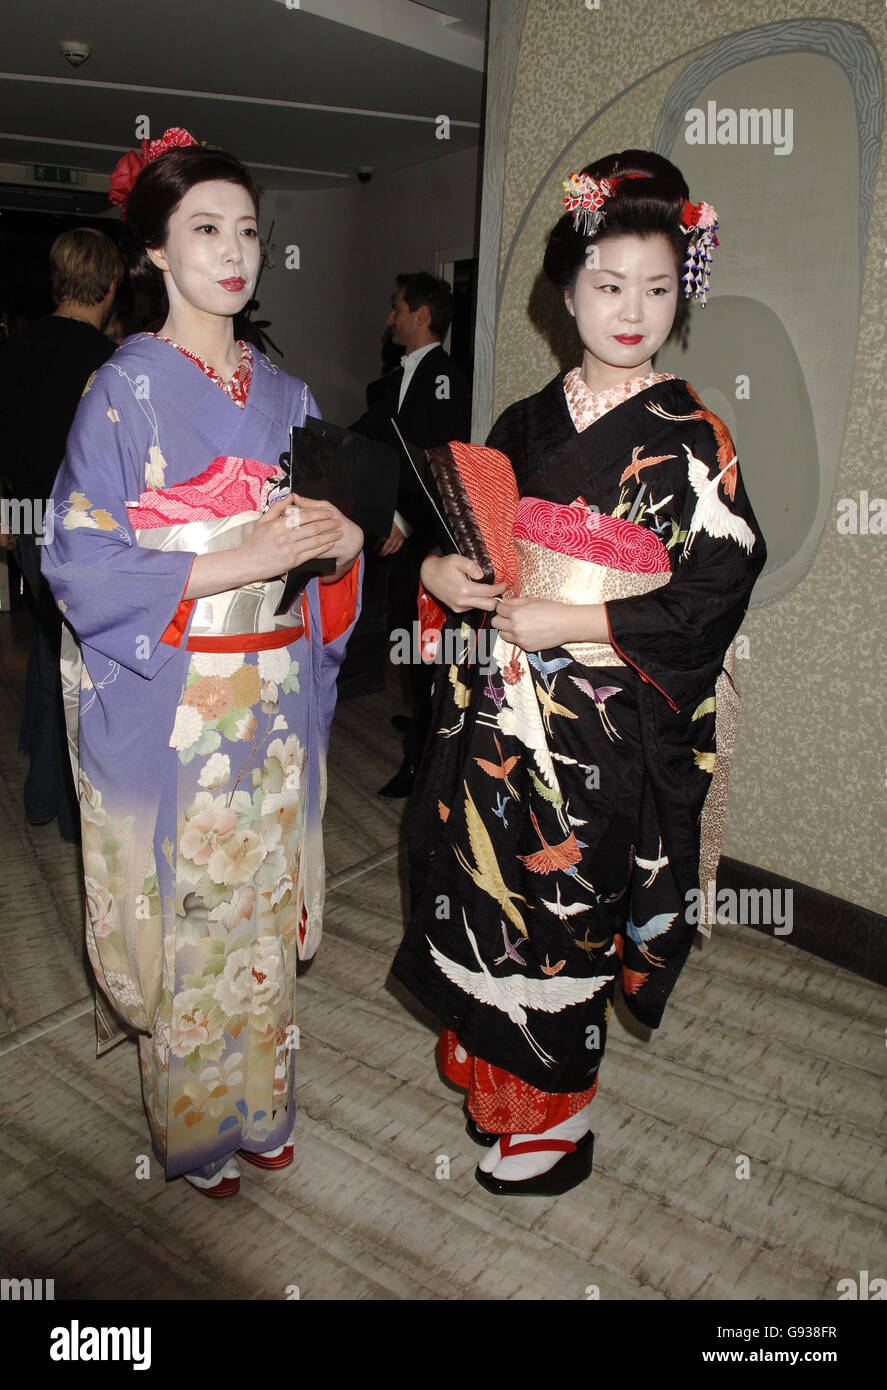 Geishas besuchen die Party nach der UK-Filmpremiere von 'Memoirs of A Geisha', aus NOBU, Berkeley Square, Central London, Mittwoch, 11. Januar 2006. DRÜCKEN Sie VERBANDSFOTO. Bildnachweis sollte lauten: Yui Mok/PA Stockfoto